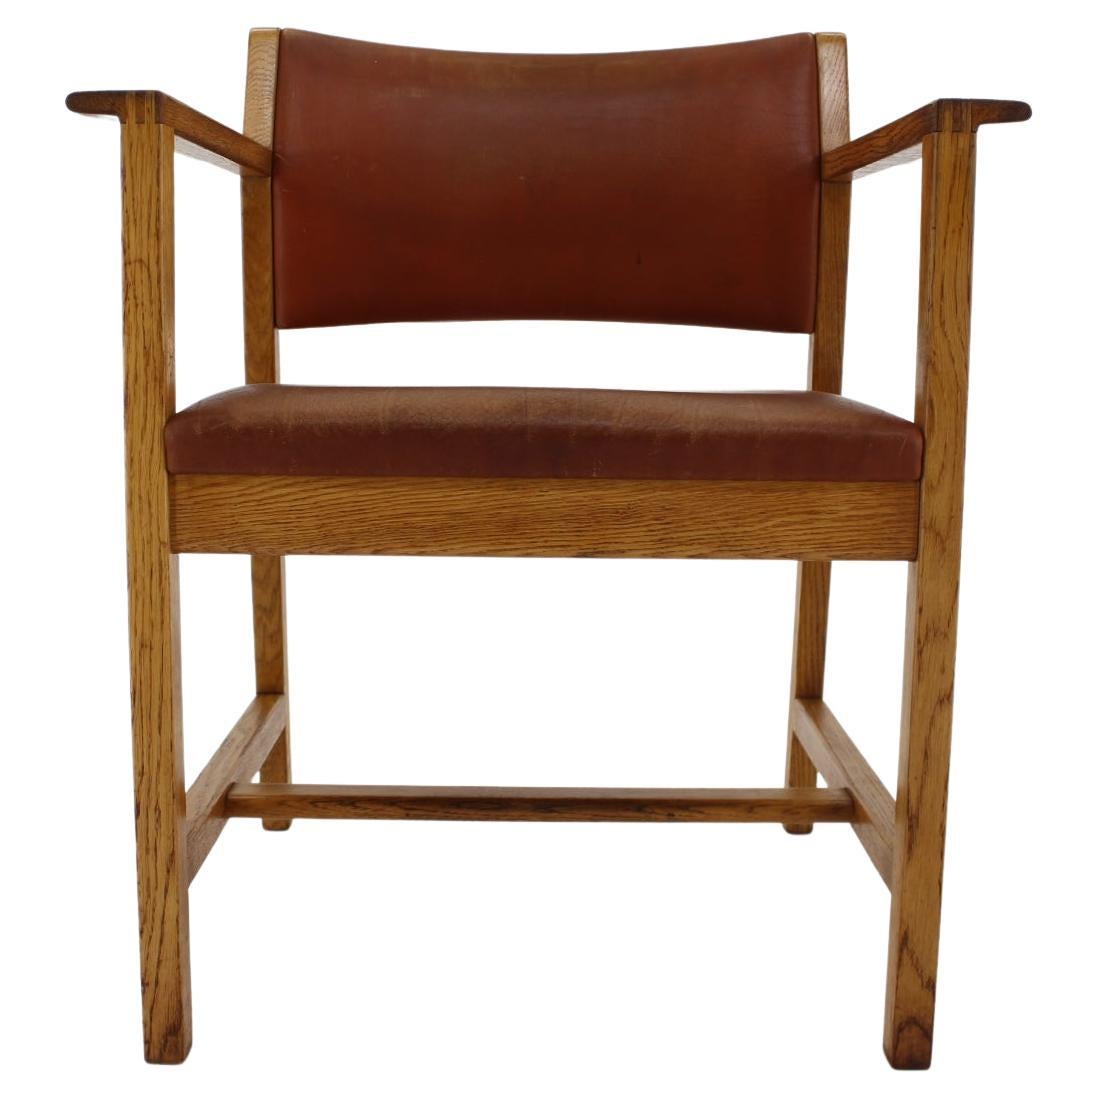 1960s Borge Mogensen Oak and Leather Desk Chair, Denmark